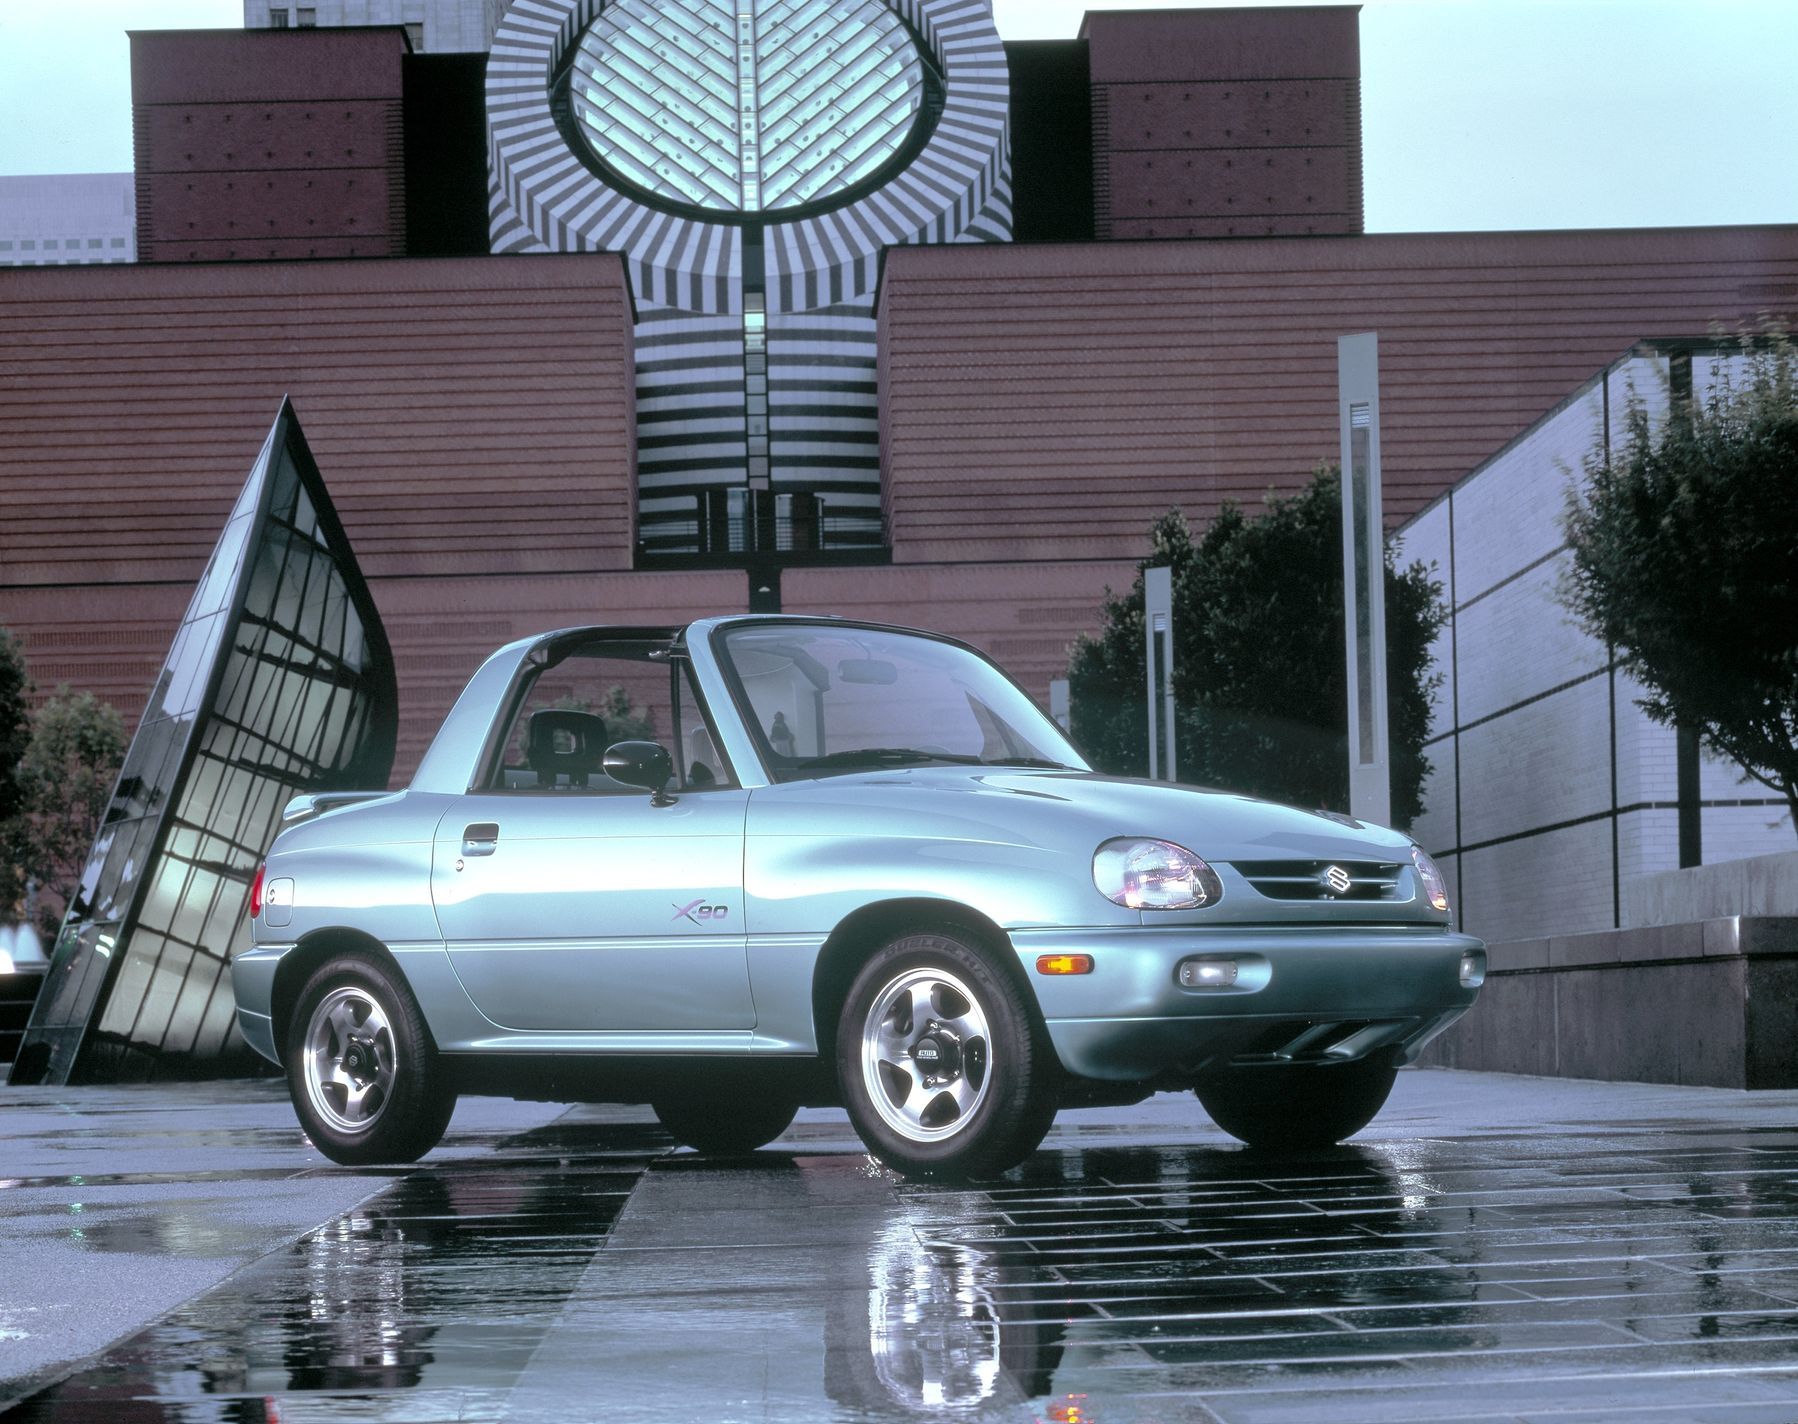 Průkopník malých SUV slaví, Suzuki Vitara má třicetiny